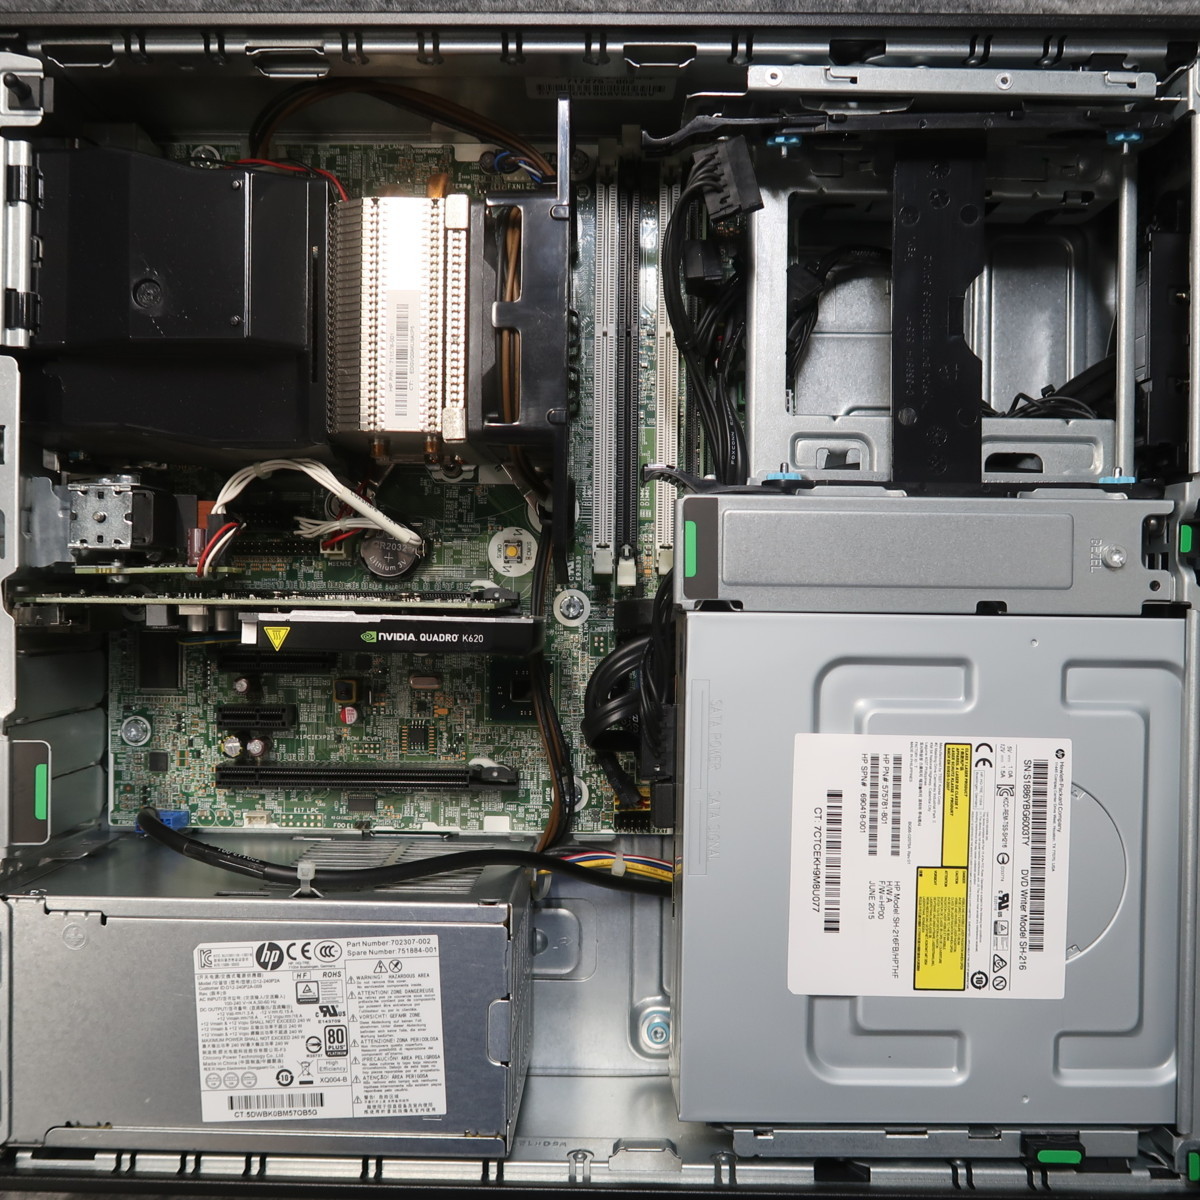 割引特売中 HP Z230 SFF Workstation Xeon E3-1226 v3 3.3GHz 4GB DVDスーパーマルチ nVIDIA Quadro K620 ジャンク A51987